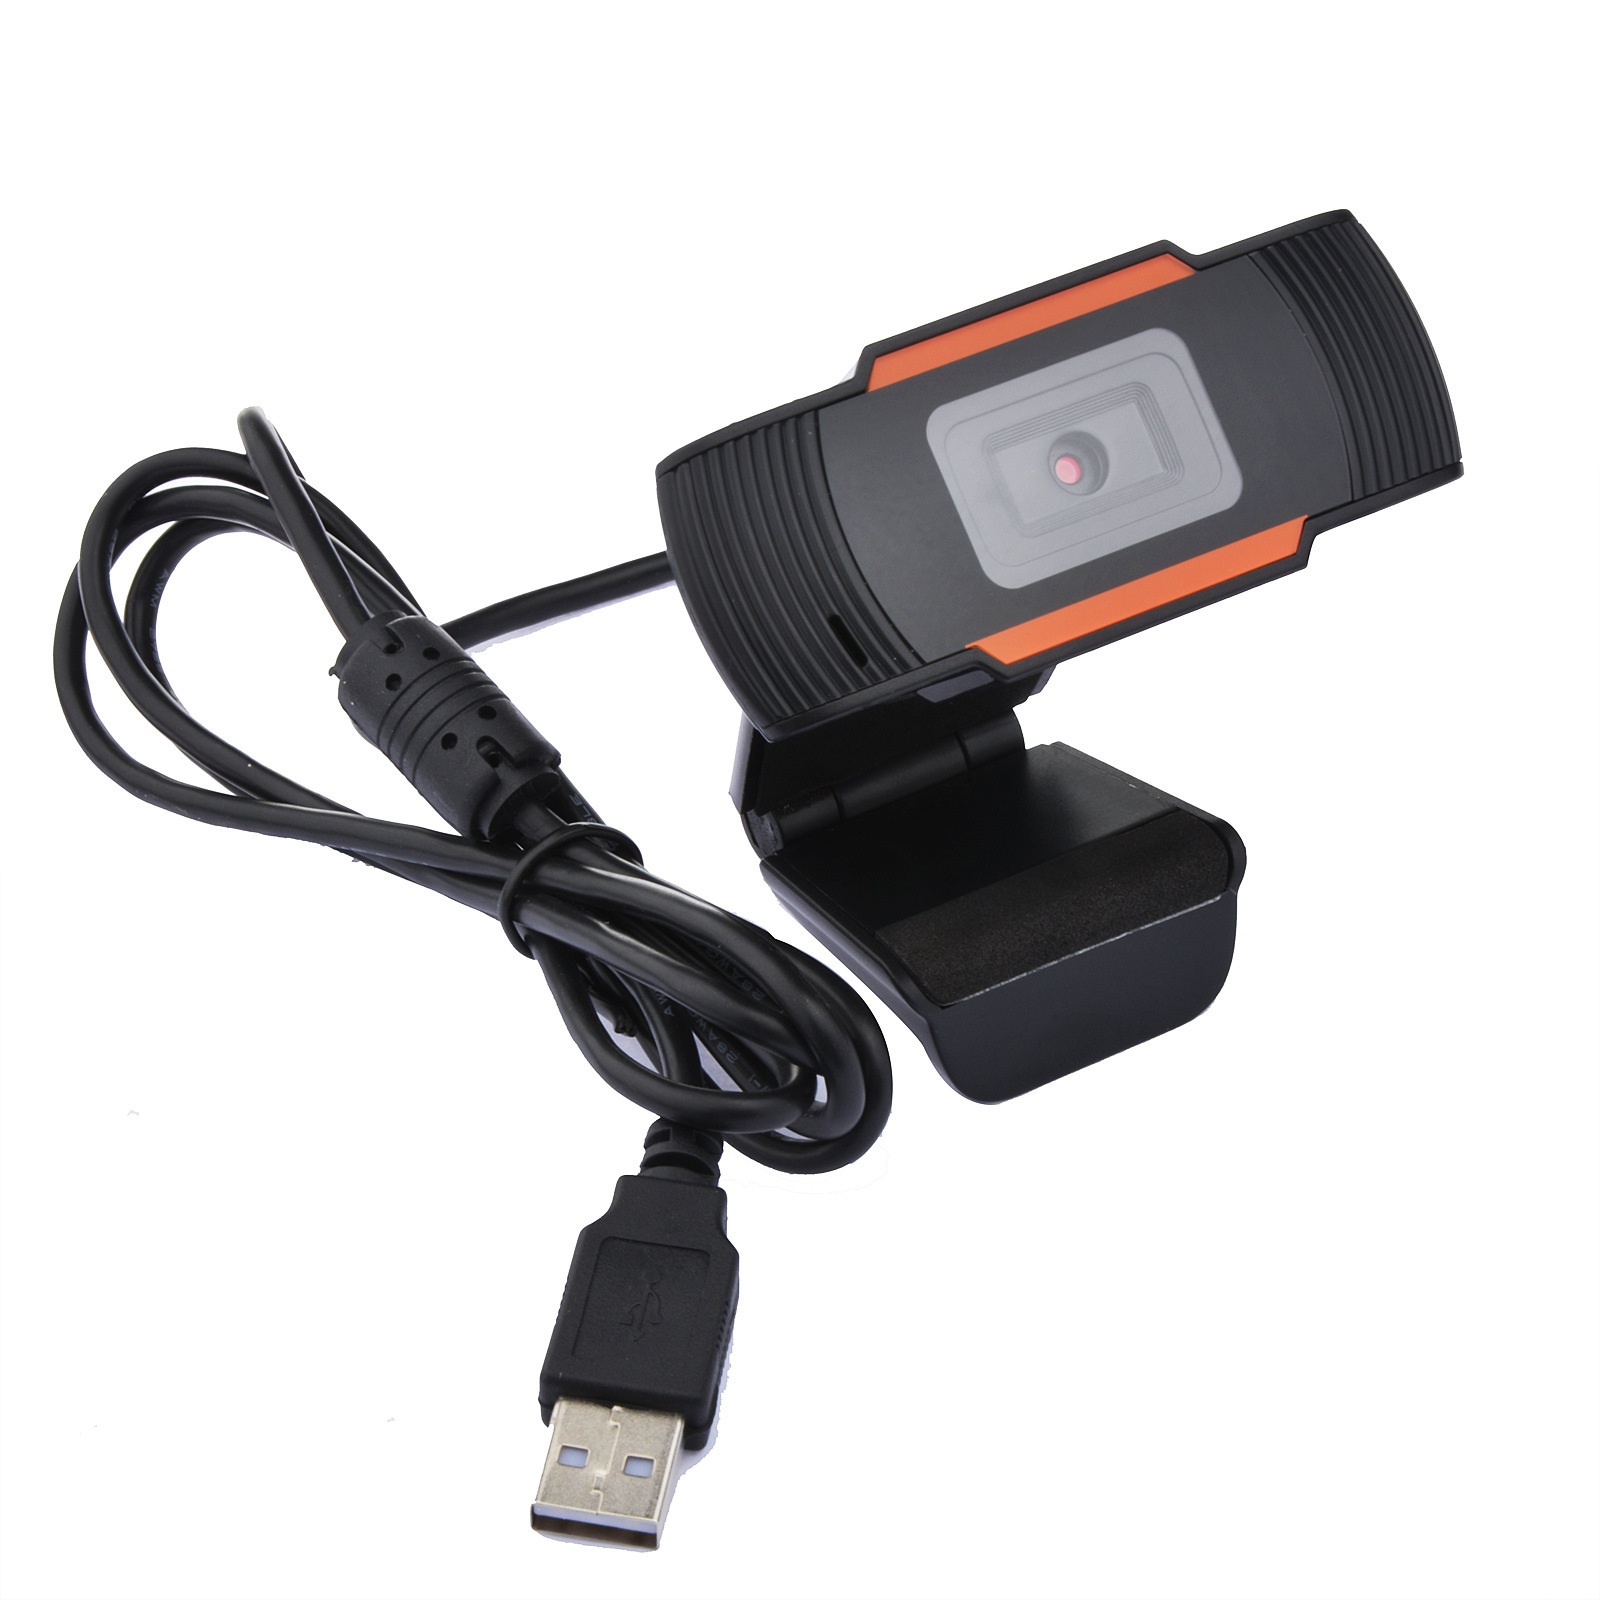 Caméra Web USB Webcam HD 1080p pour ordinateur PC Enregistrement vidéo Caméra Web en direct avec microphone Lecteur gratuit Streaming vidéo grand écran